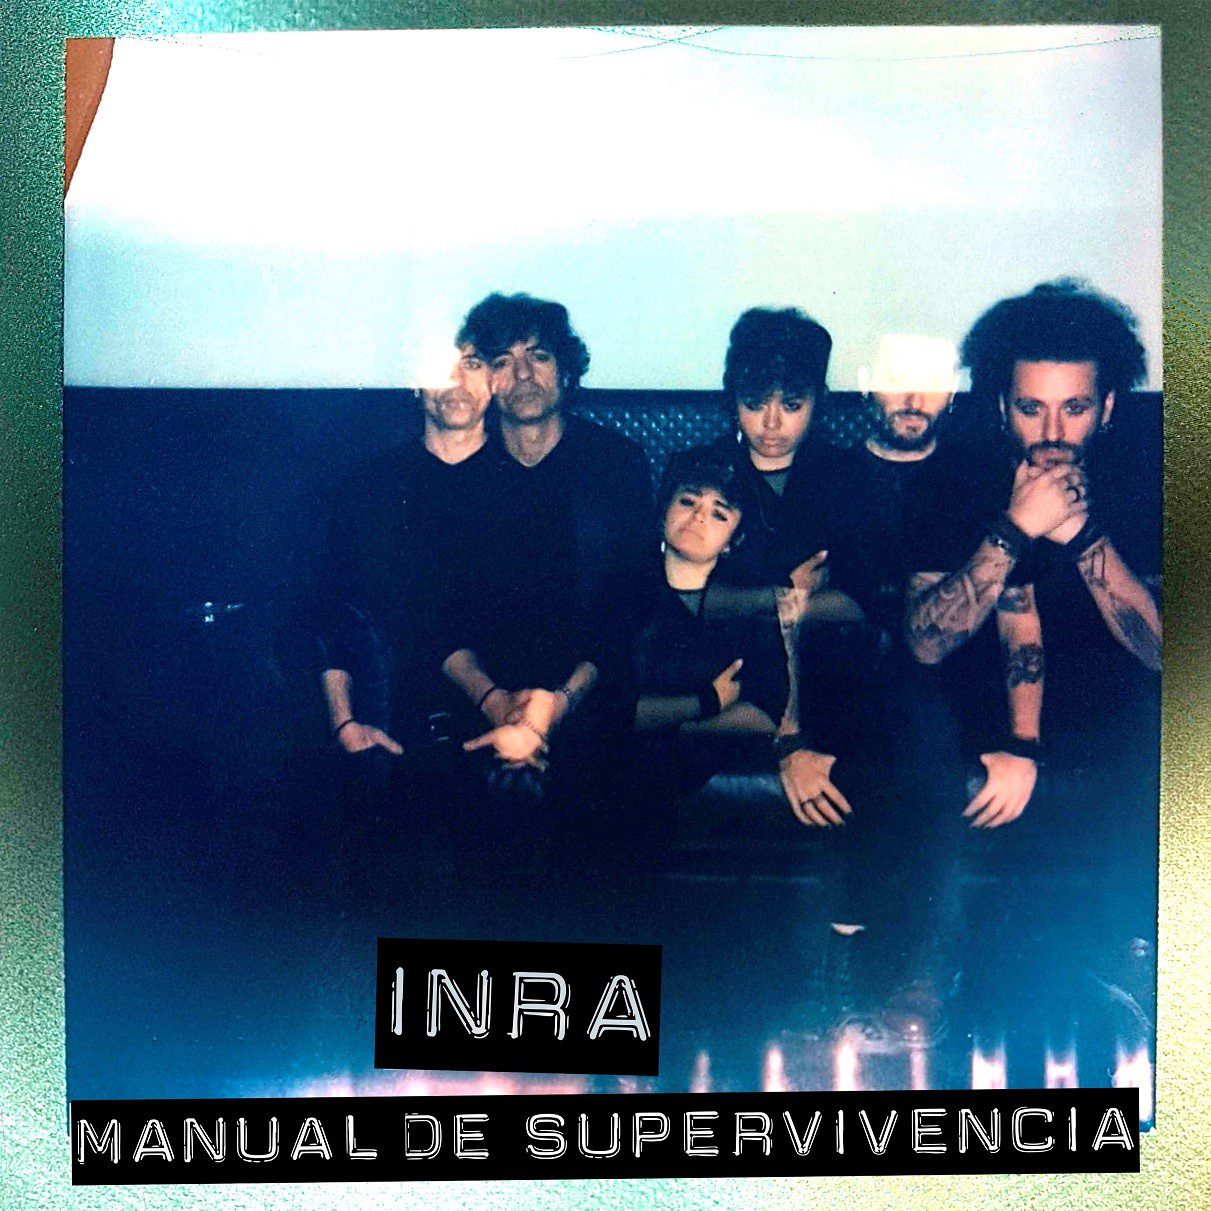 INRA publica su disco en directo «MANUAL DE SUPERVIVENCIA»